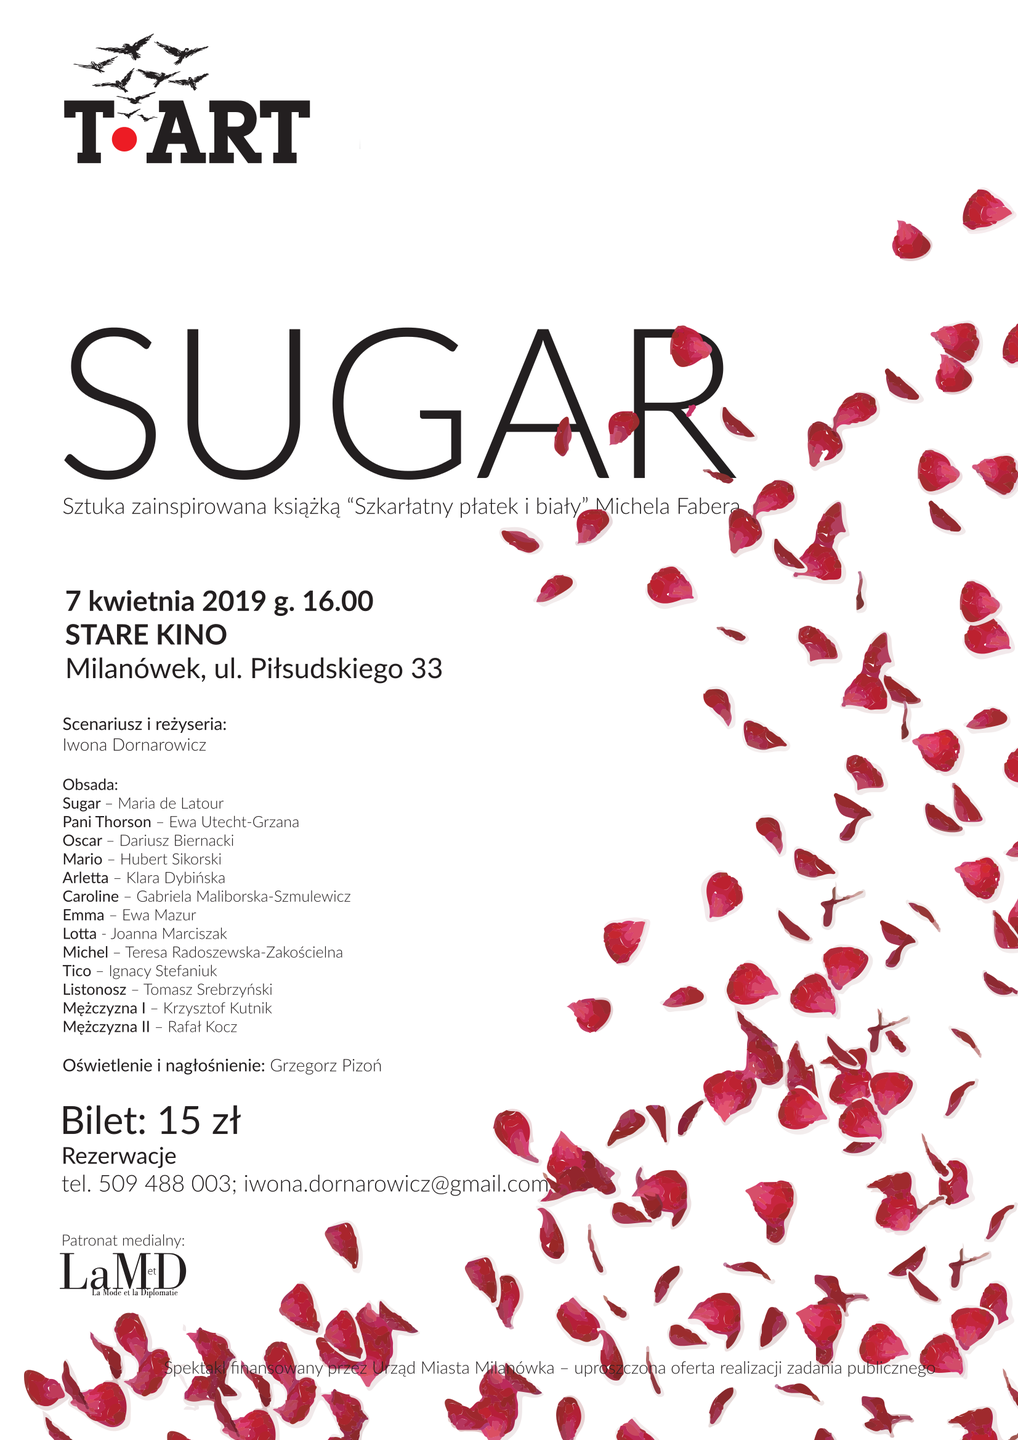 Plakat informujący o sztuce "Sugar"